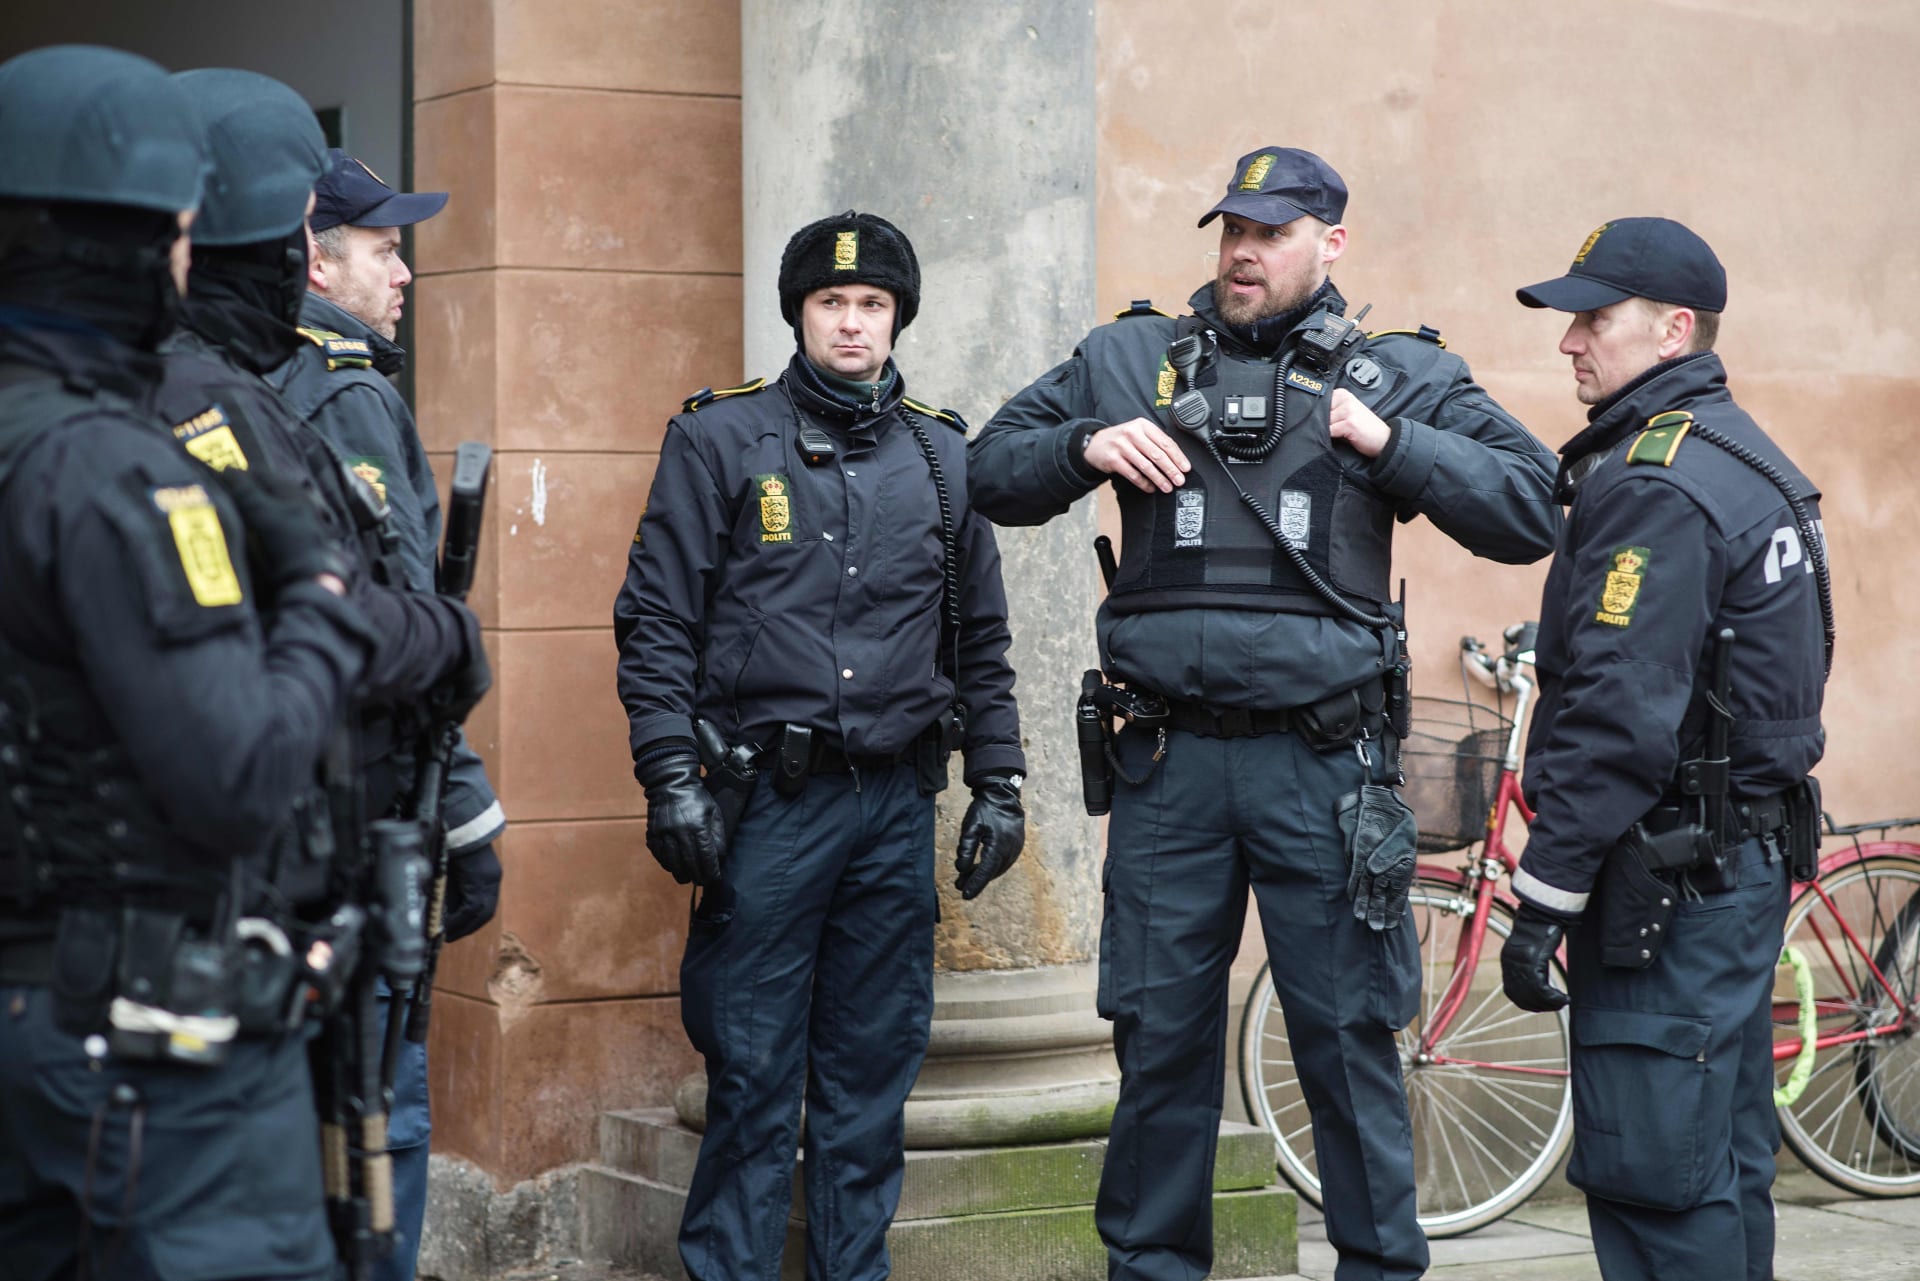 الشرطة الدنماركية تعتقل أربعة أشخاص للاشتباه في صلتهم بـ"داعش" وتصادر أسلحة وذخيرة